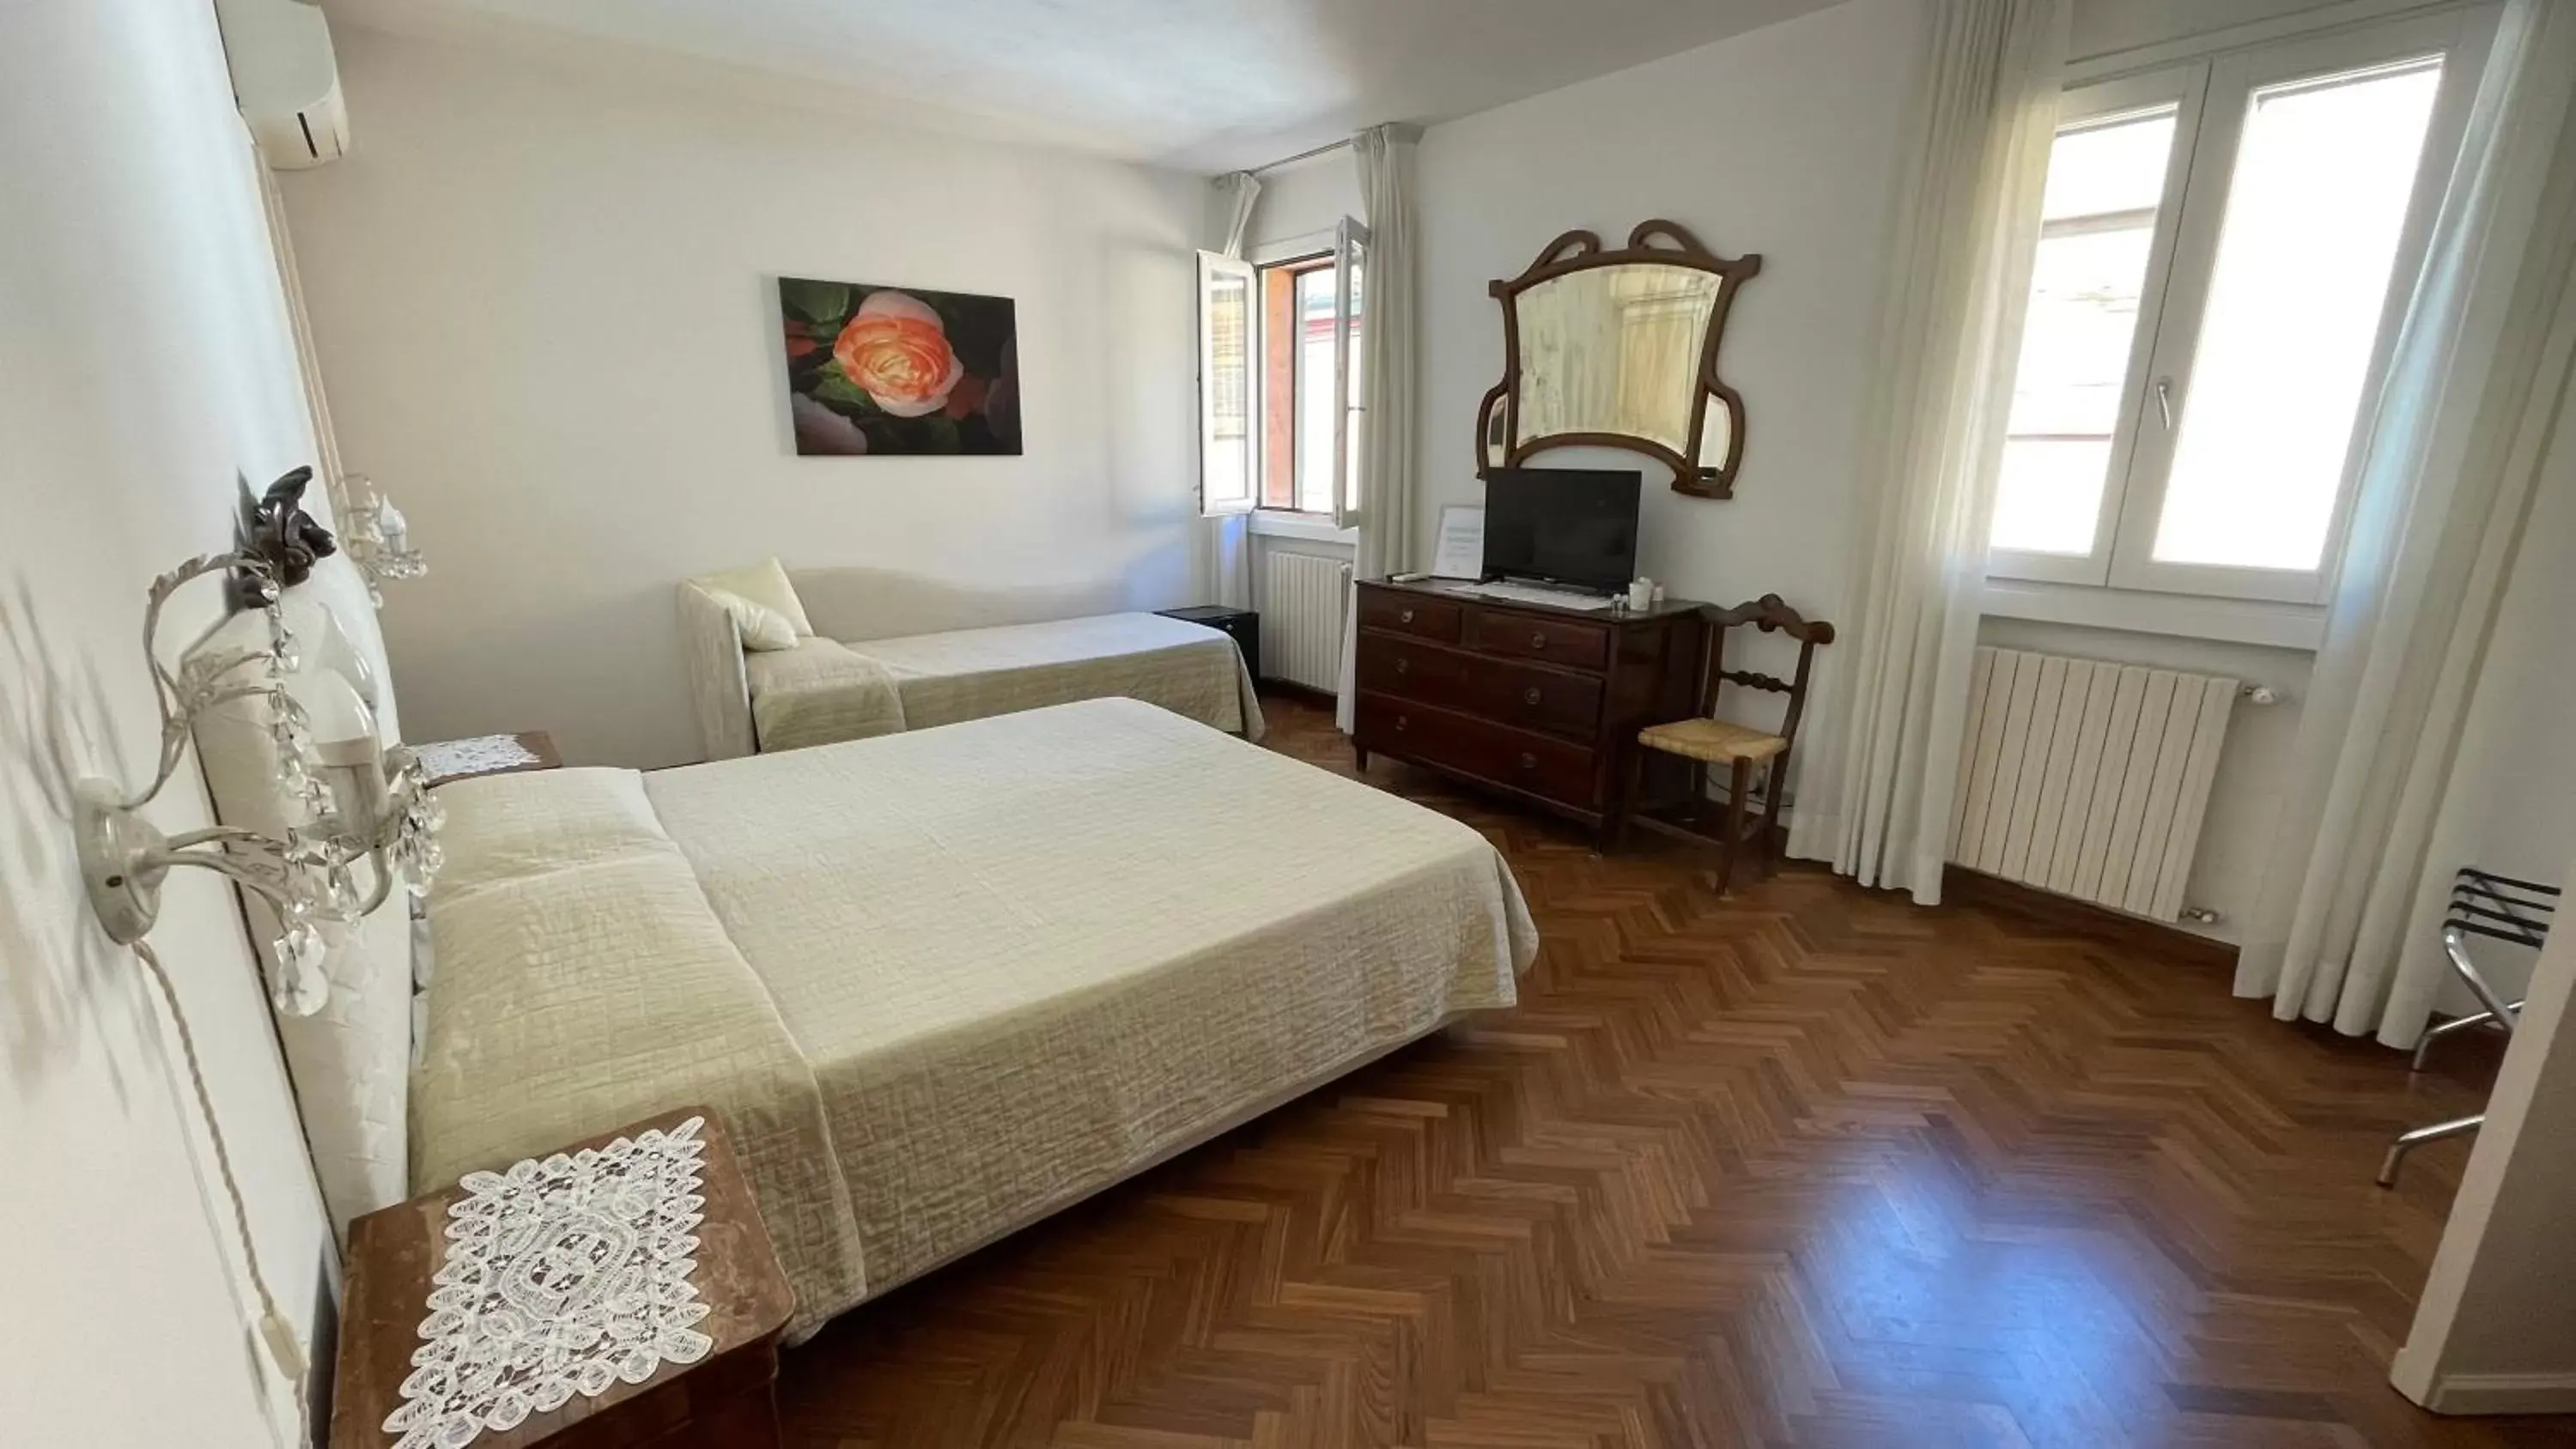 Bedroom, Bed in Ai Giardini di San Vitale